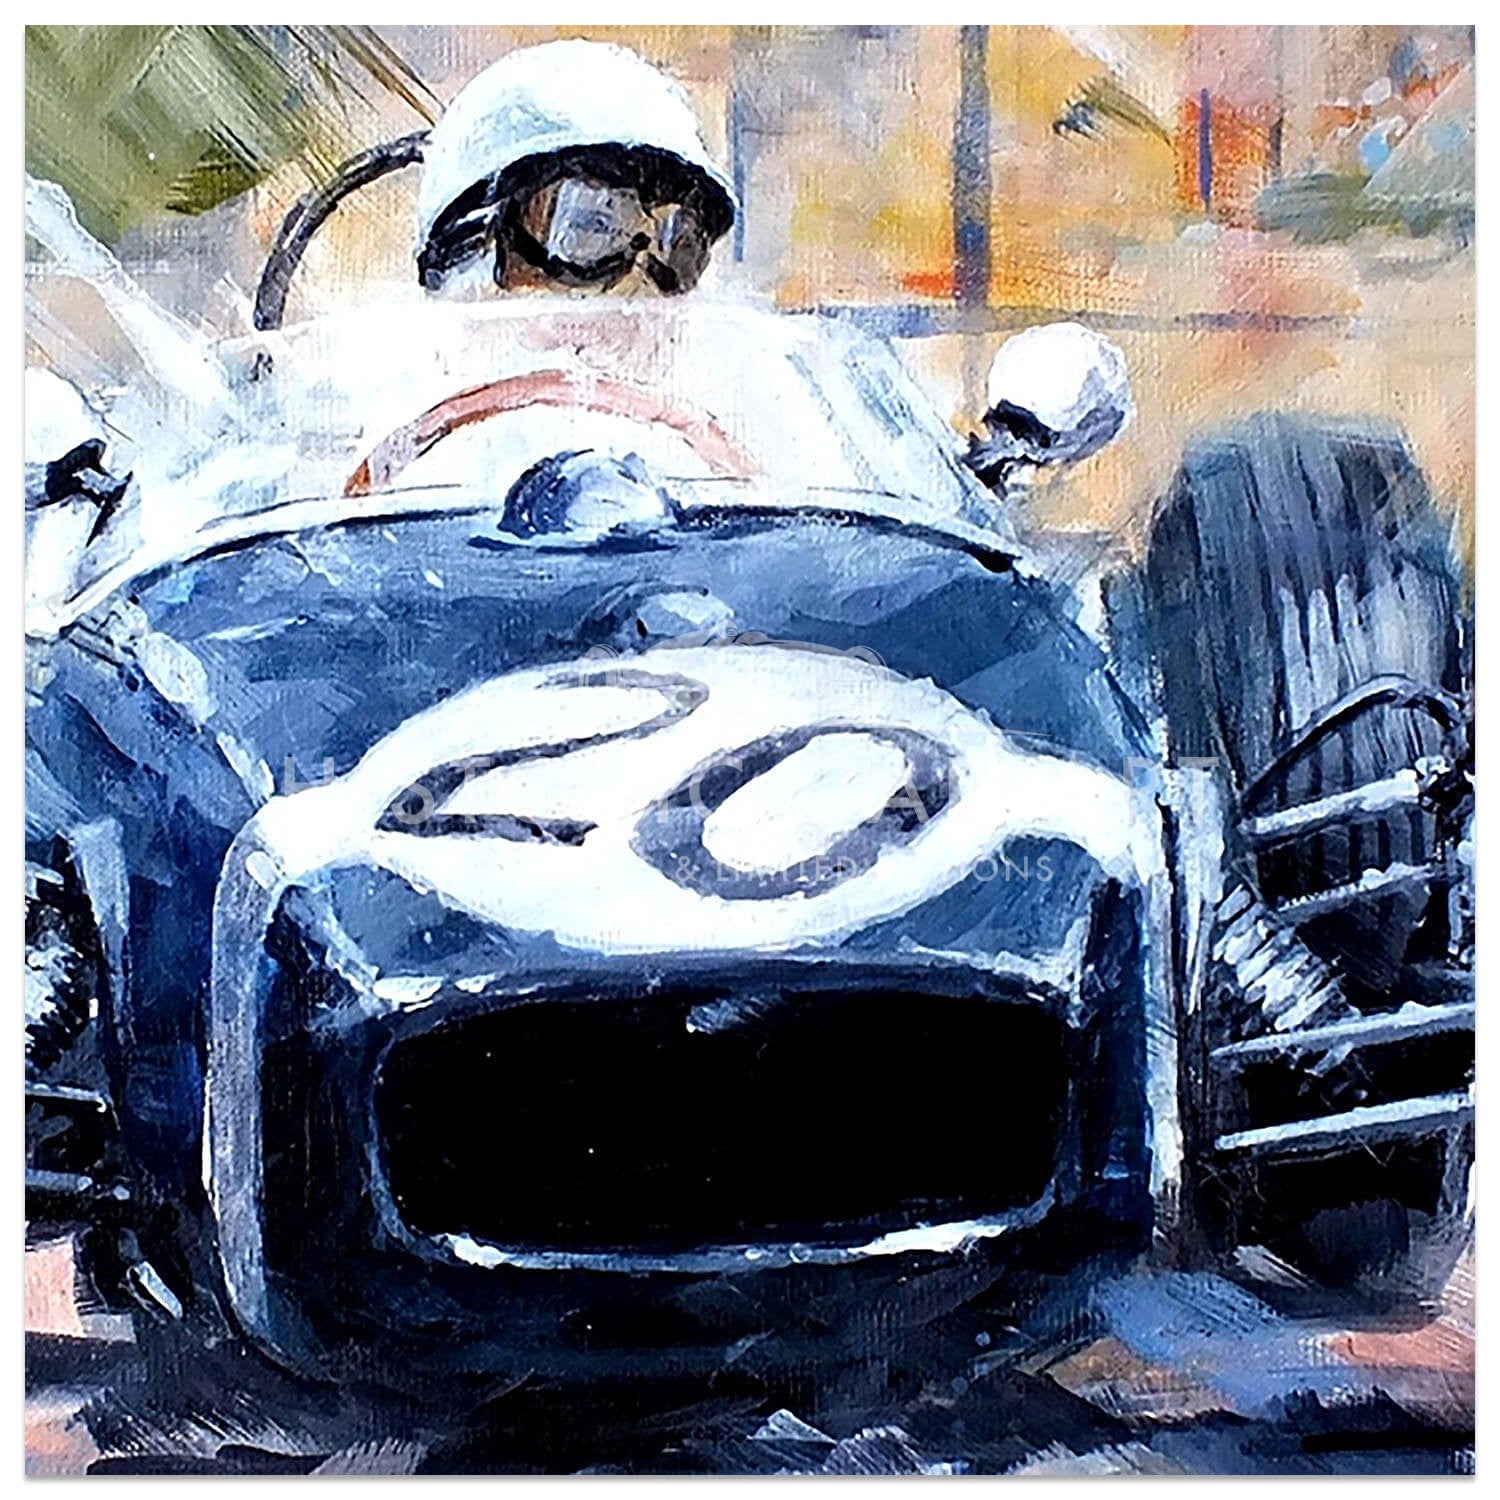 His Greatest Win | 1961 Monaco Grand Prix | Lotus 18 | Moss | Artwork